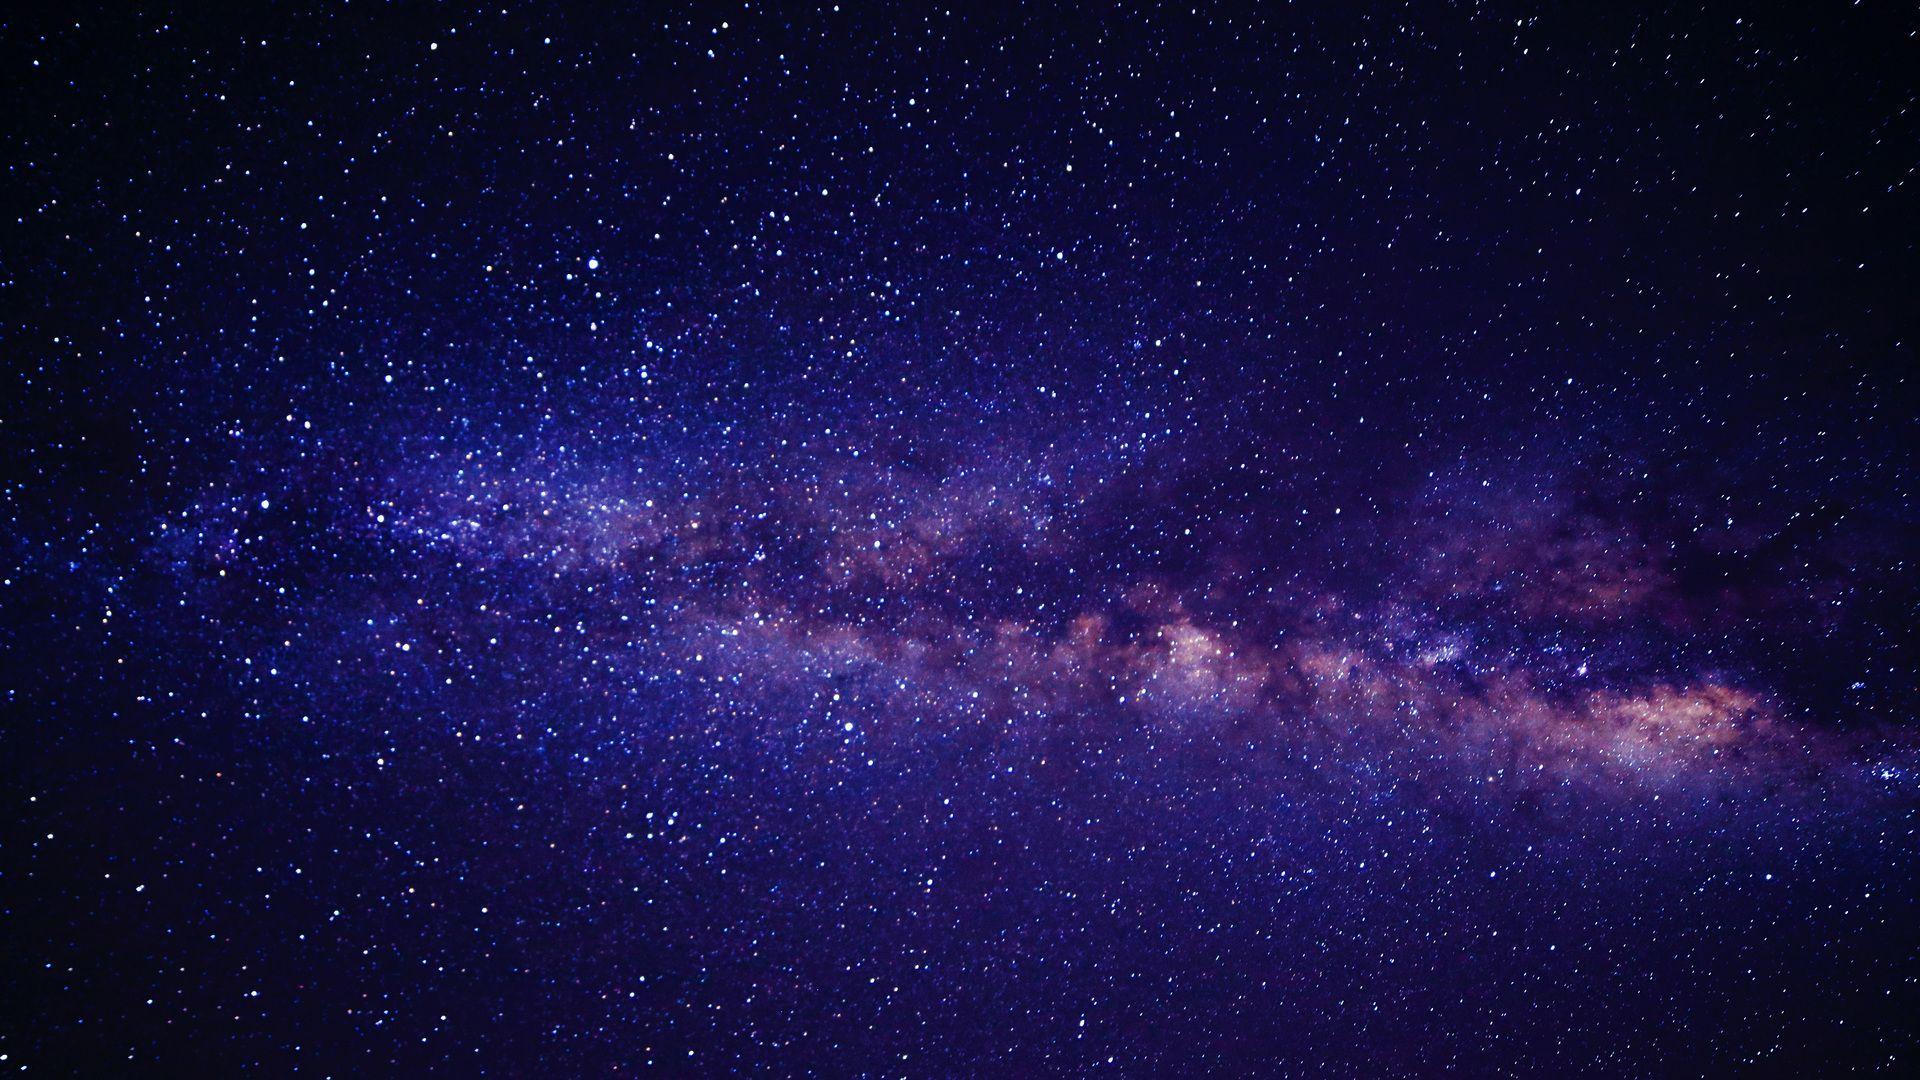 Thẩm estat tinh tú. Bức ảnh tuyệt đẹp này sẽ đưa bạn vào một cuộc phiêu lưu với tinh tú và những ngôi sao lấp lánh trên bầu trời. Hãy cùng tận hưởng khoảnh khắc yên bình trong vô tận không gian.